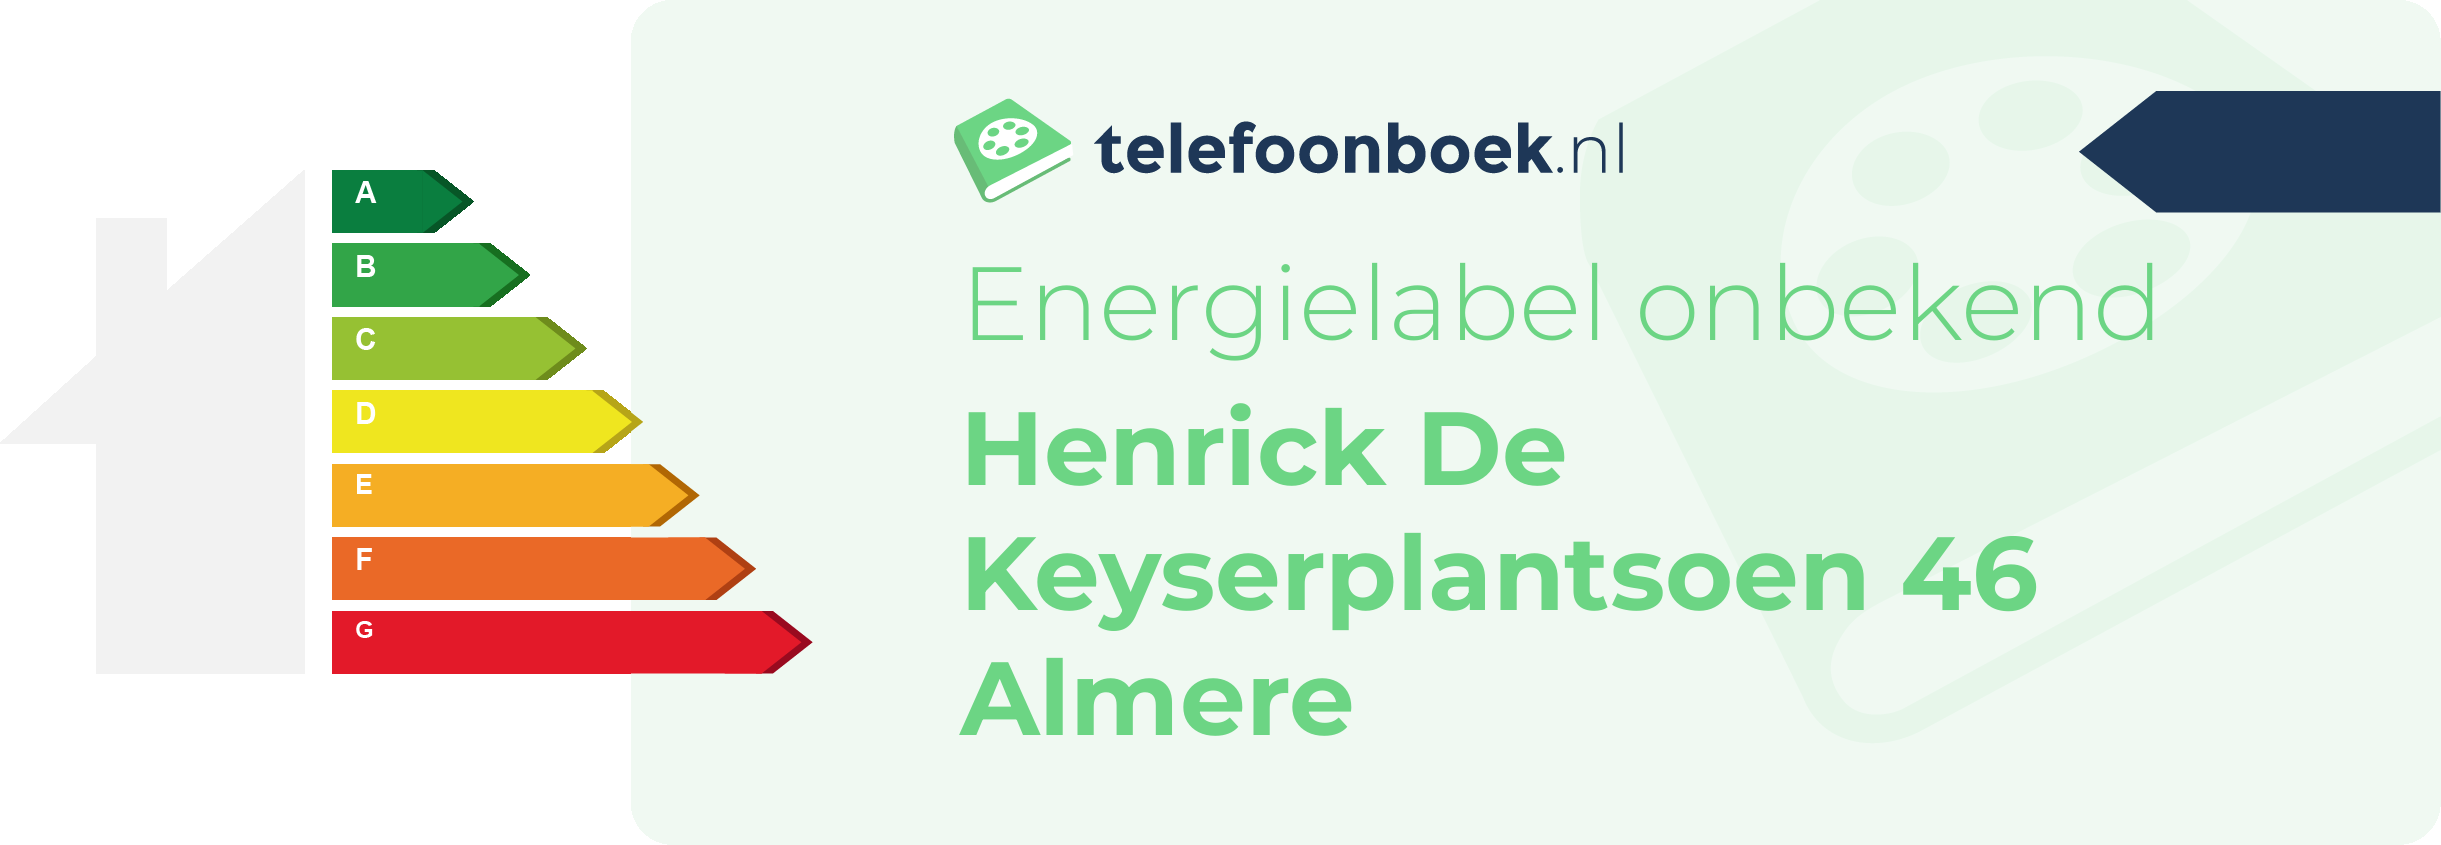 Energielabel Henrick De Keyserplantsoen 46 Almere